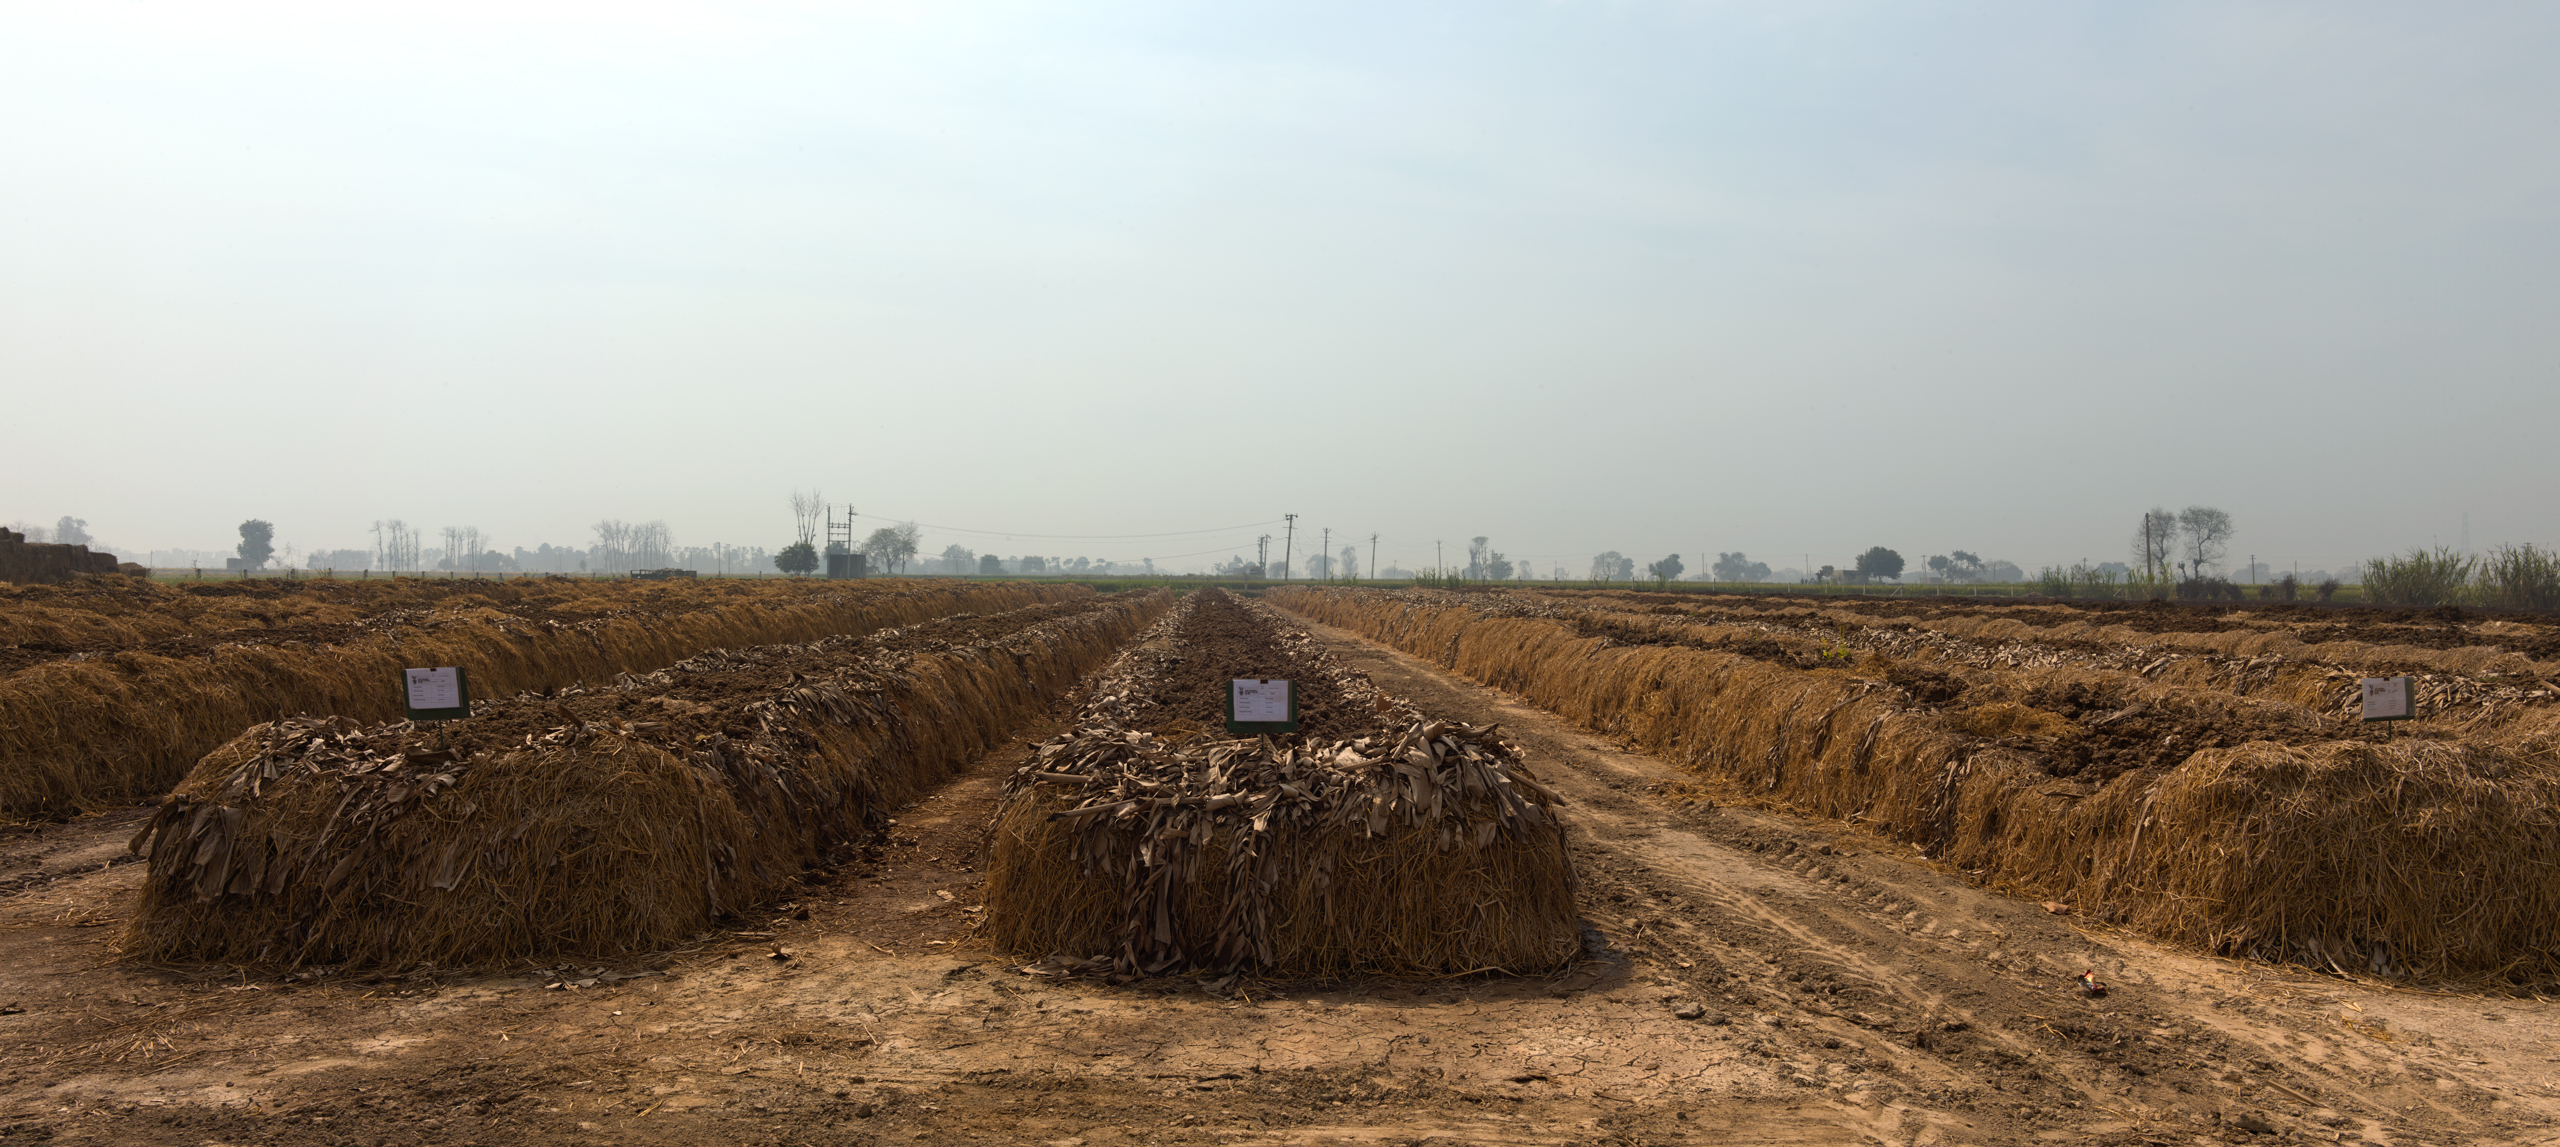 regenerative agriculture India urban farming composting